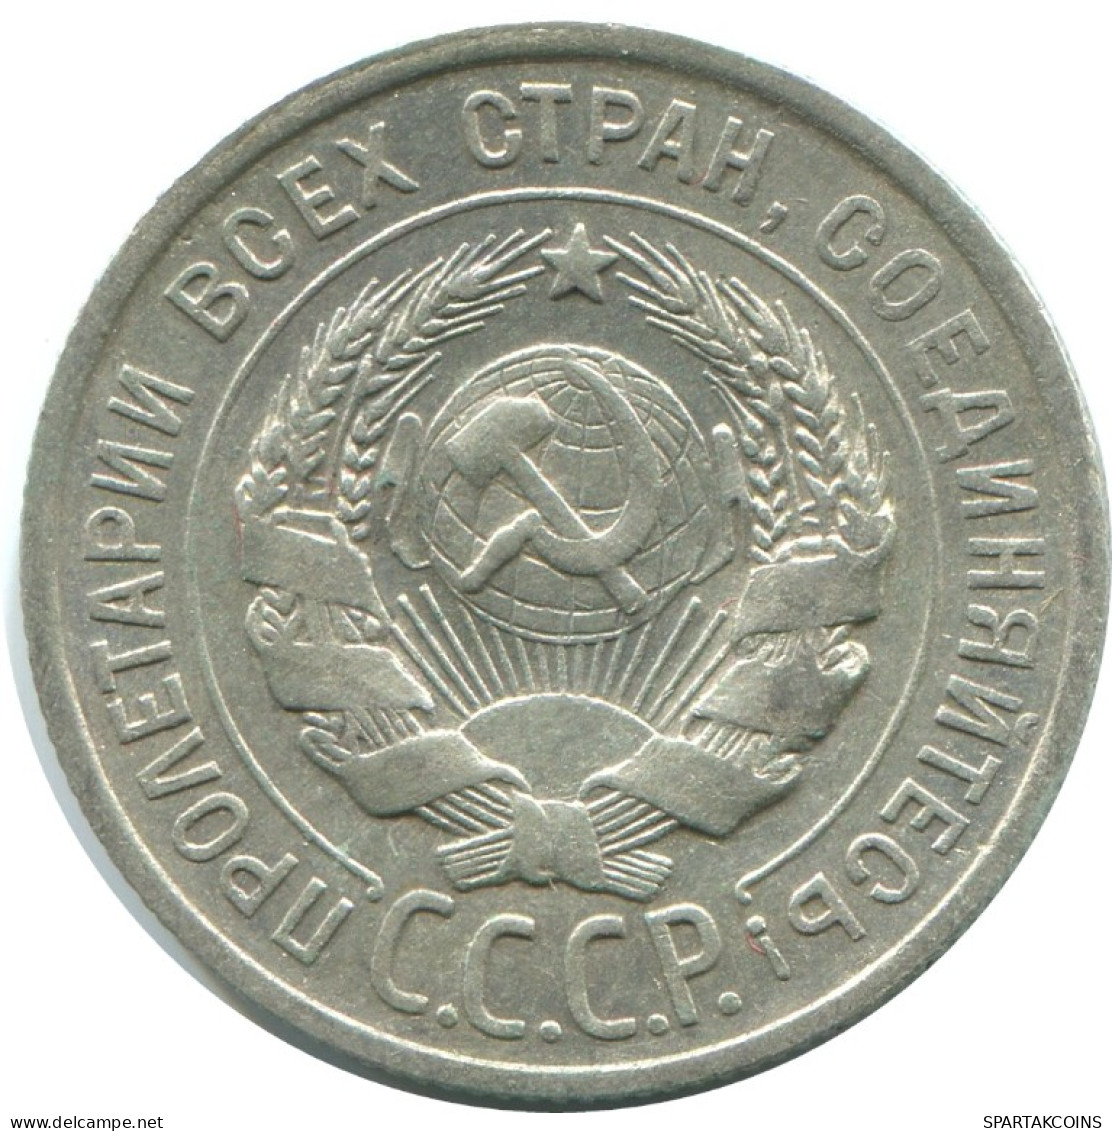 20 KOPEKS 1924 RUSSLAND RUSSIA USSR SILBER Münze HIGH GRADE #AF300.4.D.A - Russland